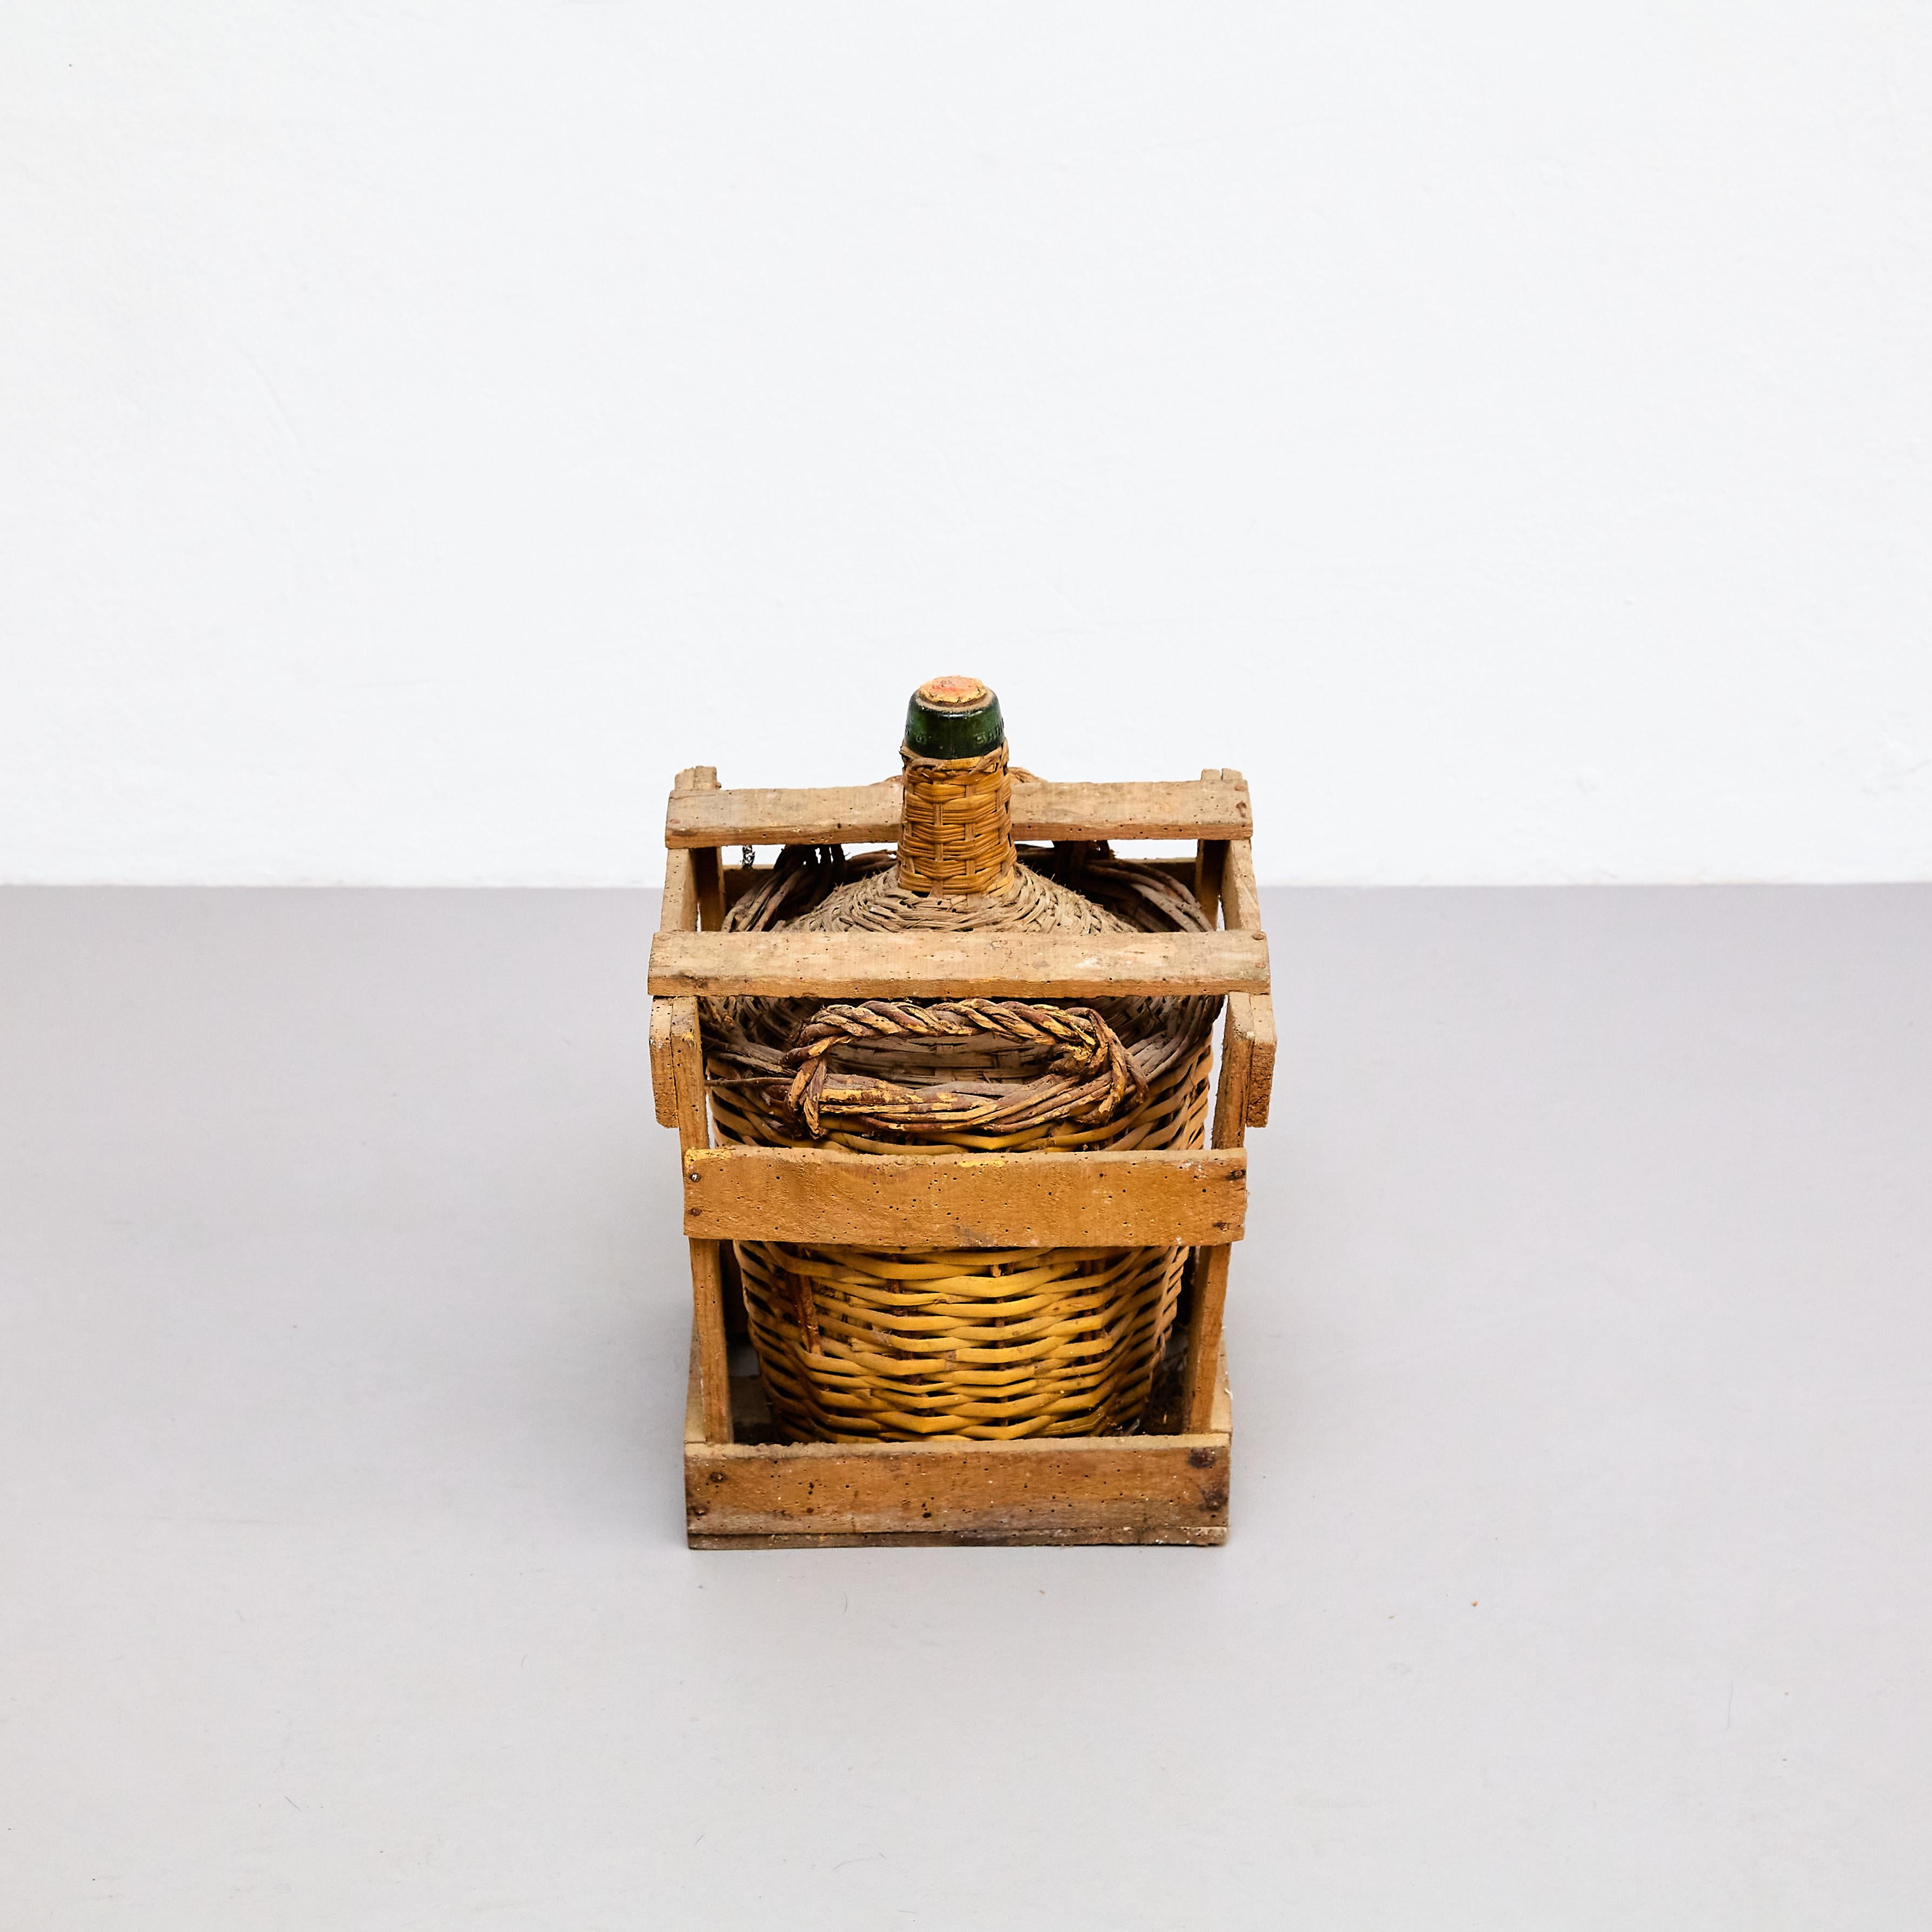 Antike Damajuana-Glasflasche mit Korb aus Rattan und Holz, von unbekanntem Künstler.

Hergestellt in Barcelona, um 1950.

MATERIALIEN:
Glas, Rattan, Holz.

Abmessungen:
D 30 B 31,8 H 41,5

Im Originalzustand, mit einigen sichtbaren